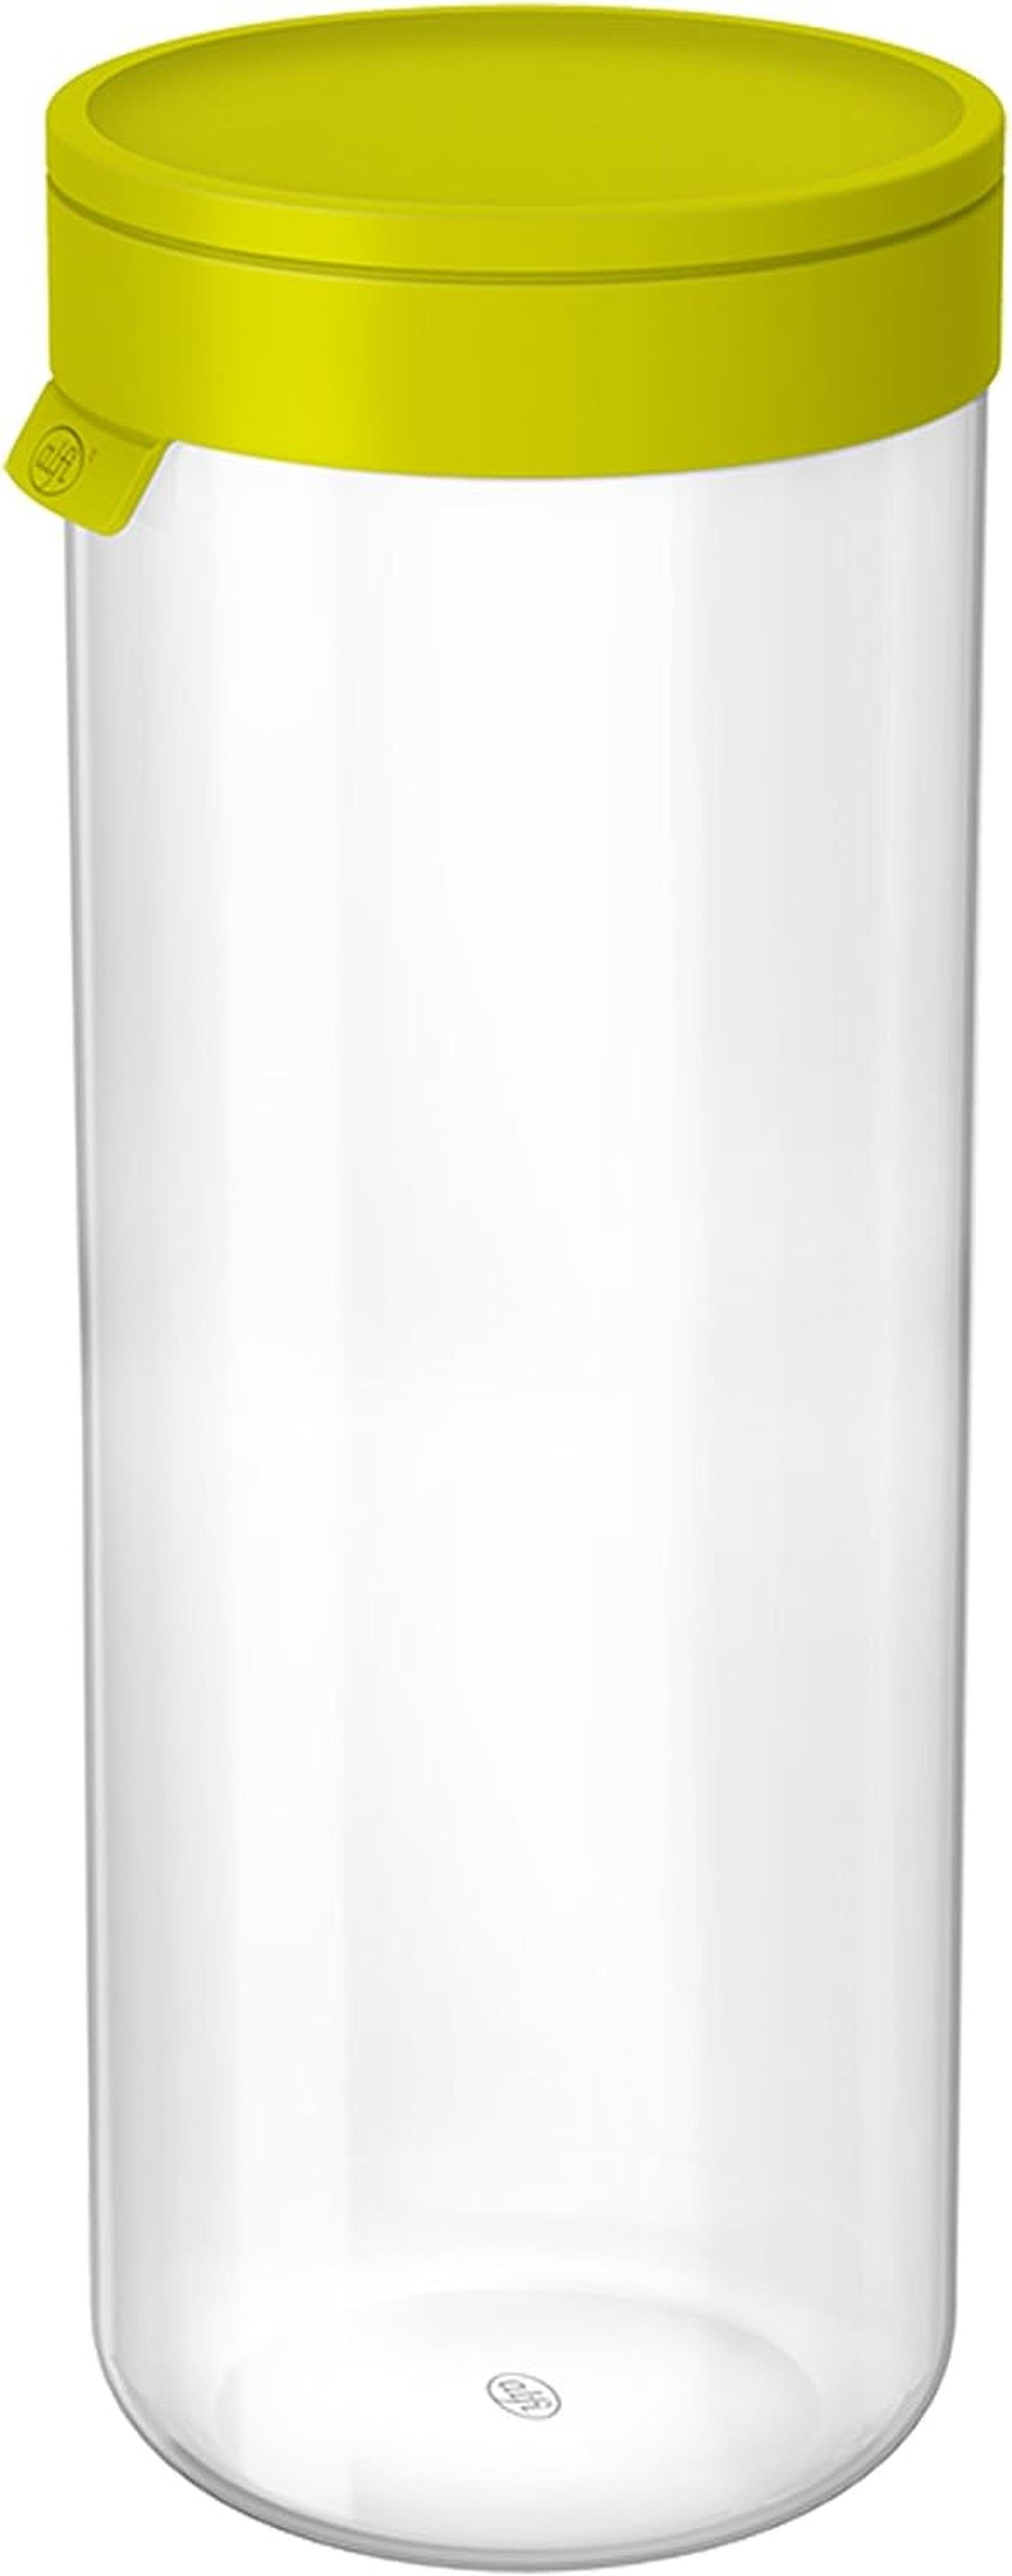 Alfi Vorratsdose Vorratsdose mit Deckel Frischhaltedose Vorrats Glas Dosen Frischhalte, aus Glas, Deckel aus BPA freien Silikon,Spülmaschinenfest